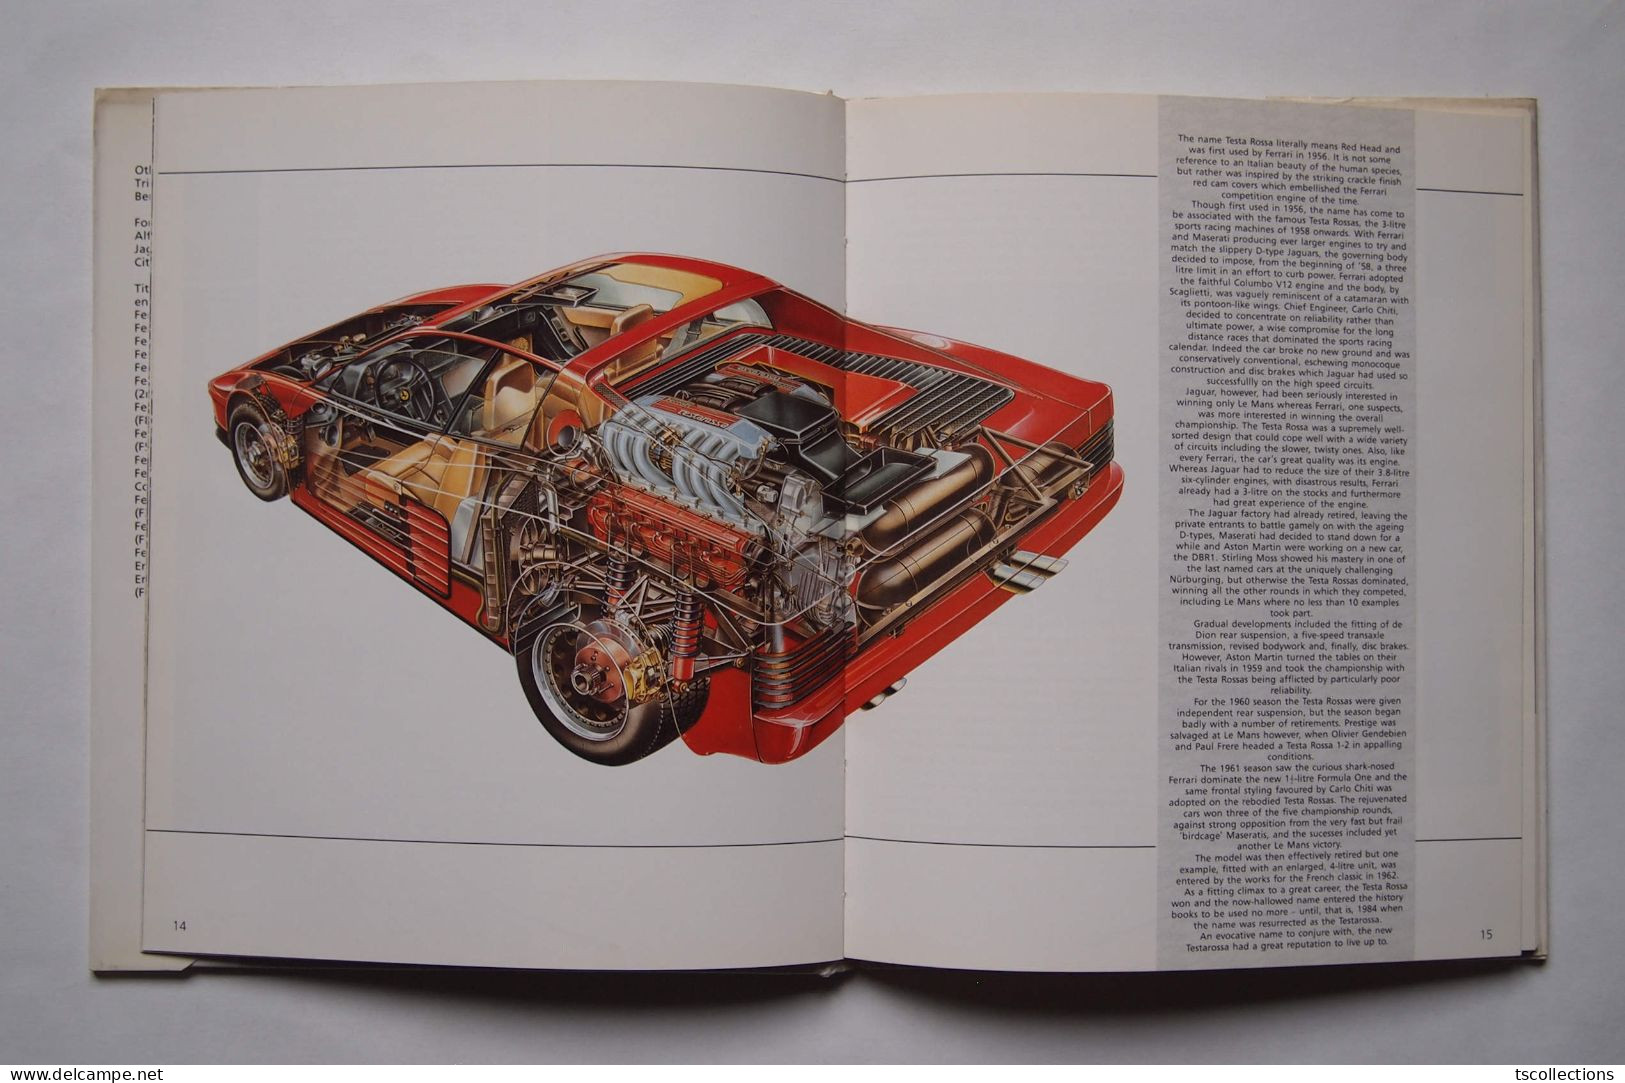 Ferrari Testarossa - Books On Collecting